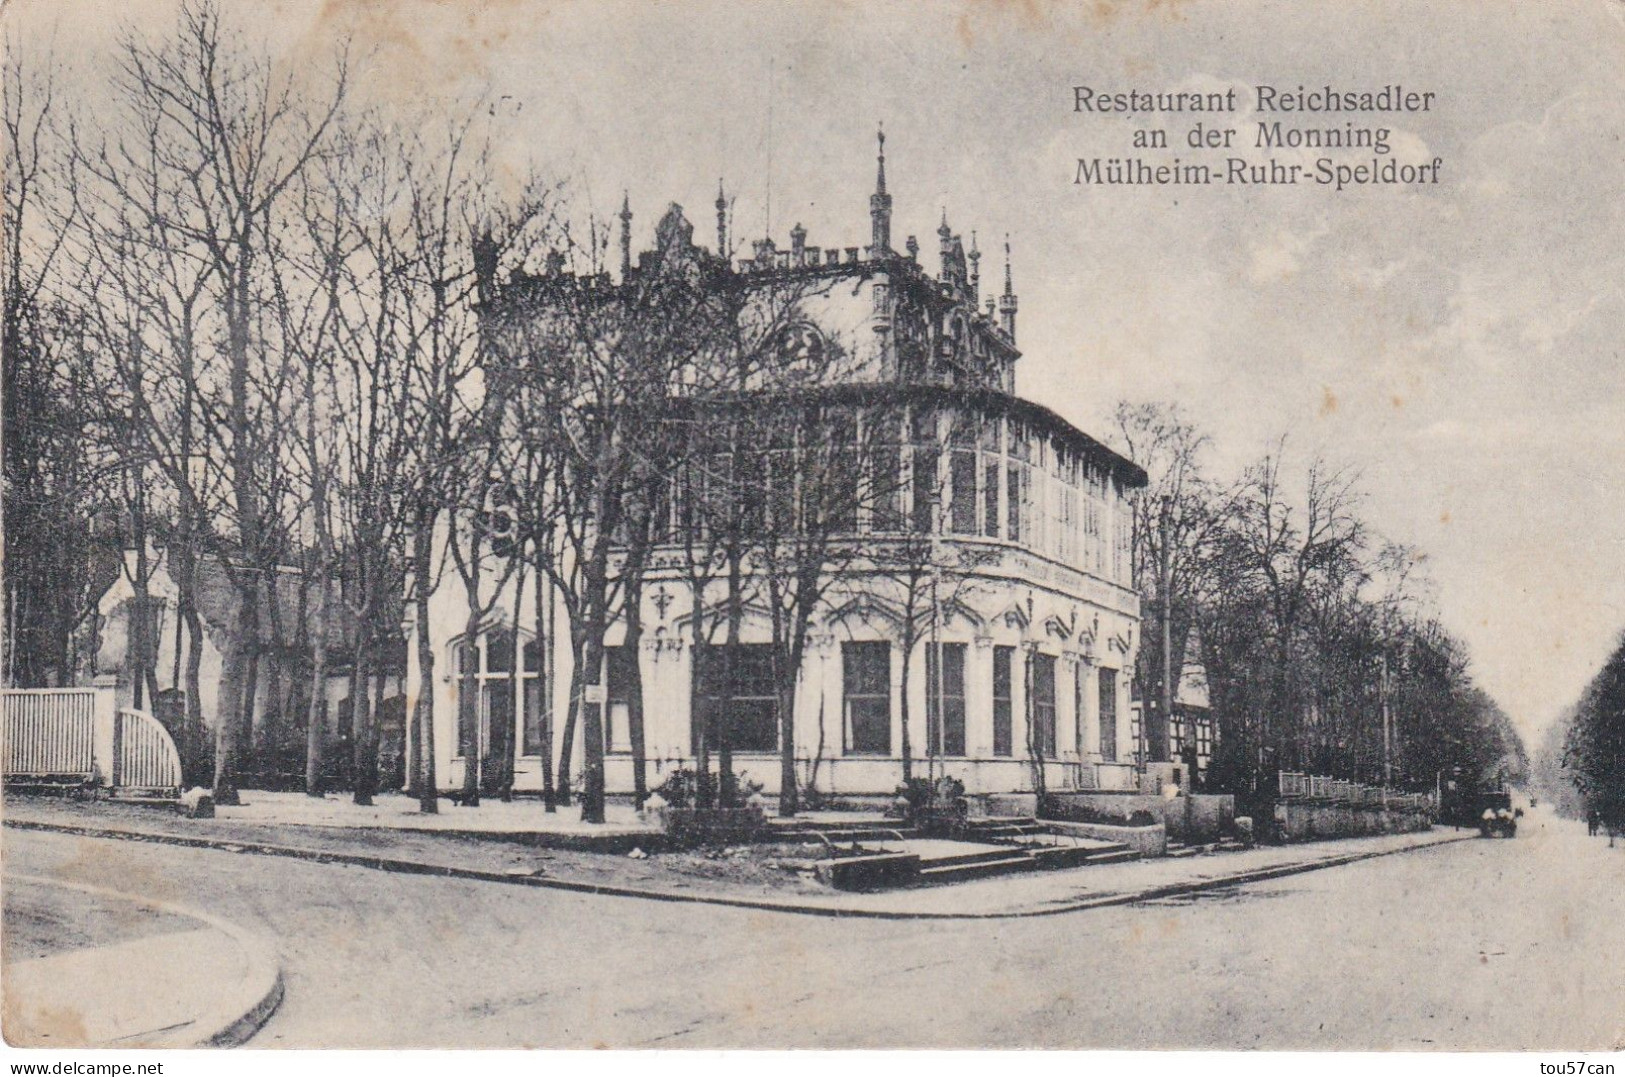 MÜLHEIM - RUHR - SPELDORF - RHEINLAND-WESTFALLEN  -  DEUTSCHLAND - ANSICHTKARTE 1921  -  RESTAURANT  REICHSADLER. - Mülheim A. D. Ruhr